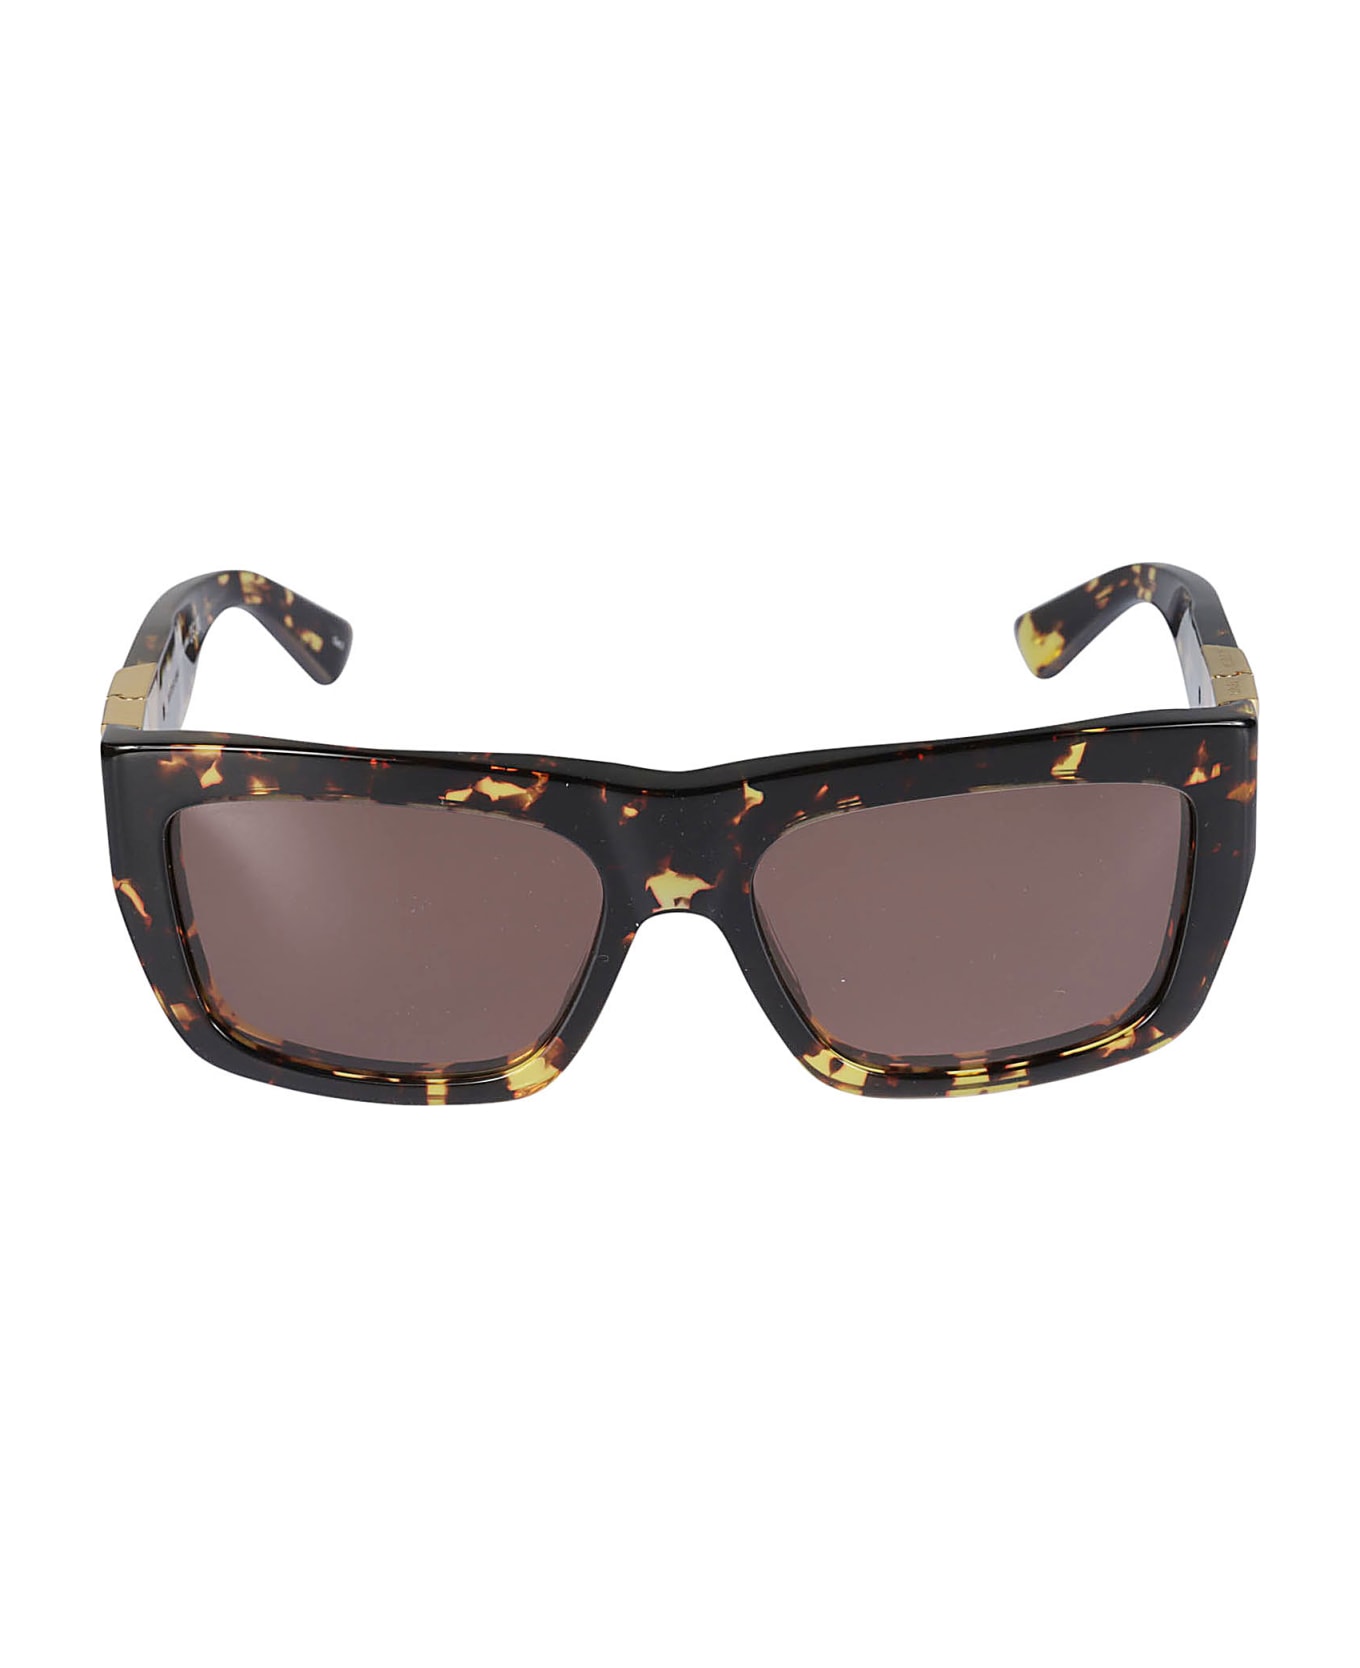 Bottega Veneta Eyewear Bold Rectangular Sunglasses - Marrone